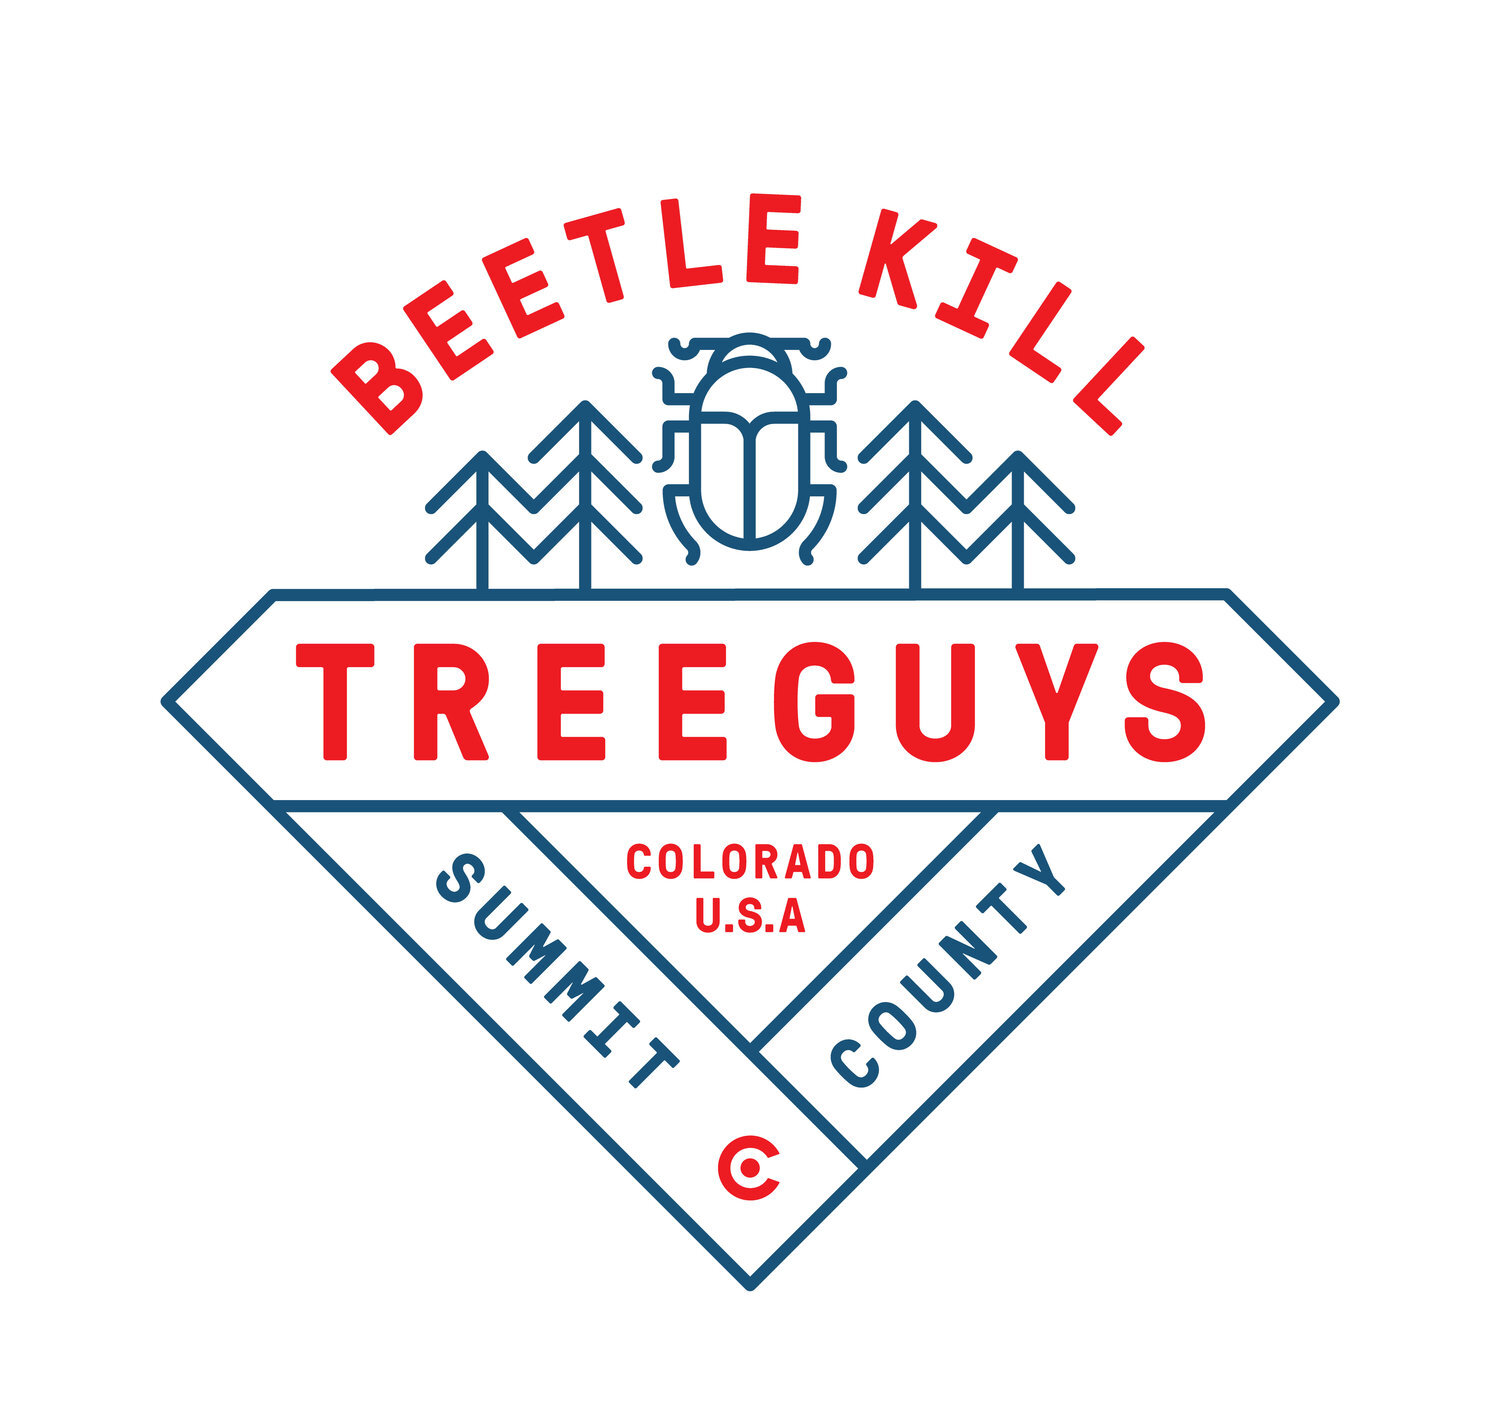 Beetle Kill Tree Guys